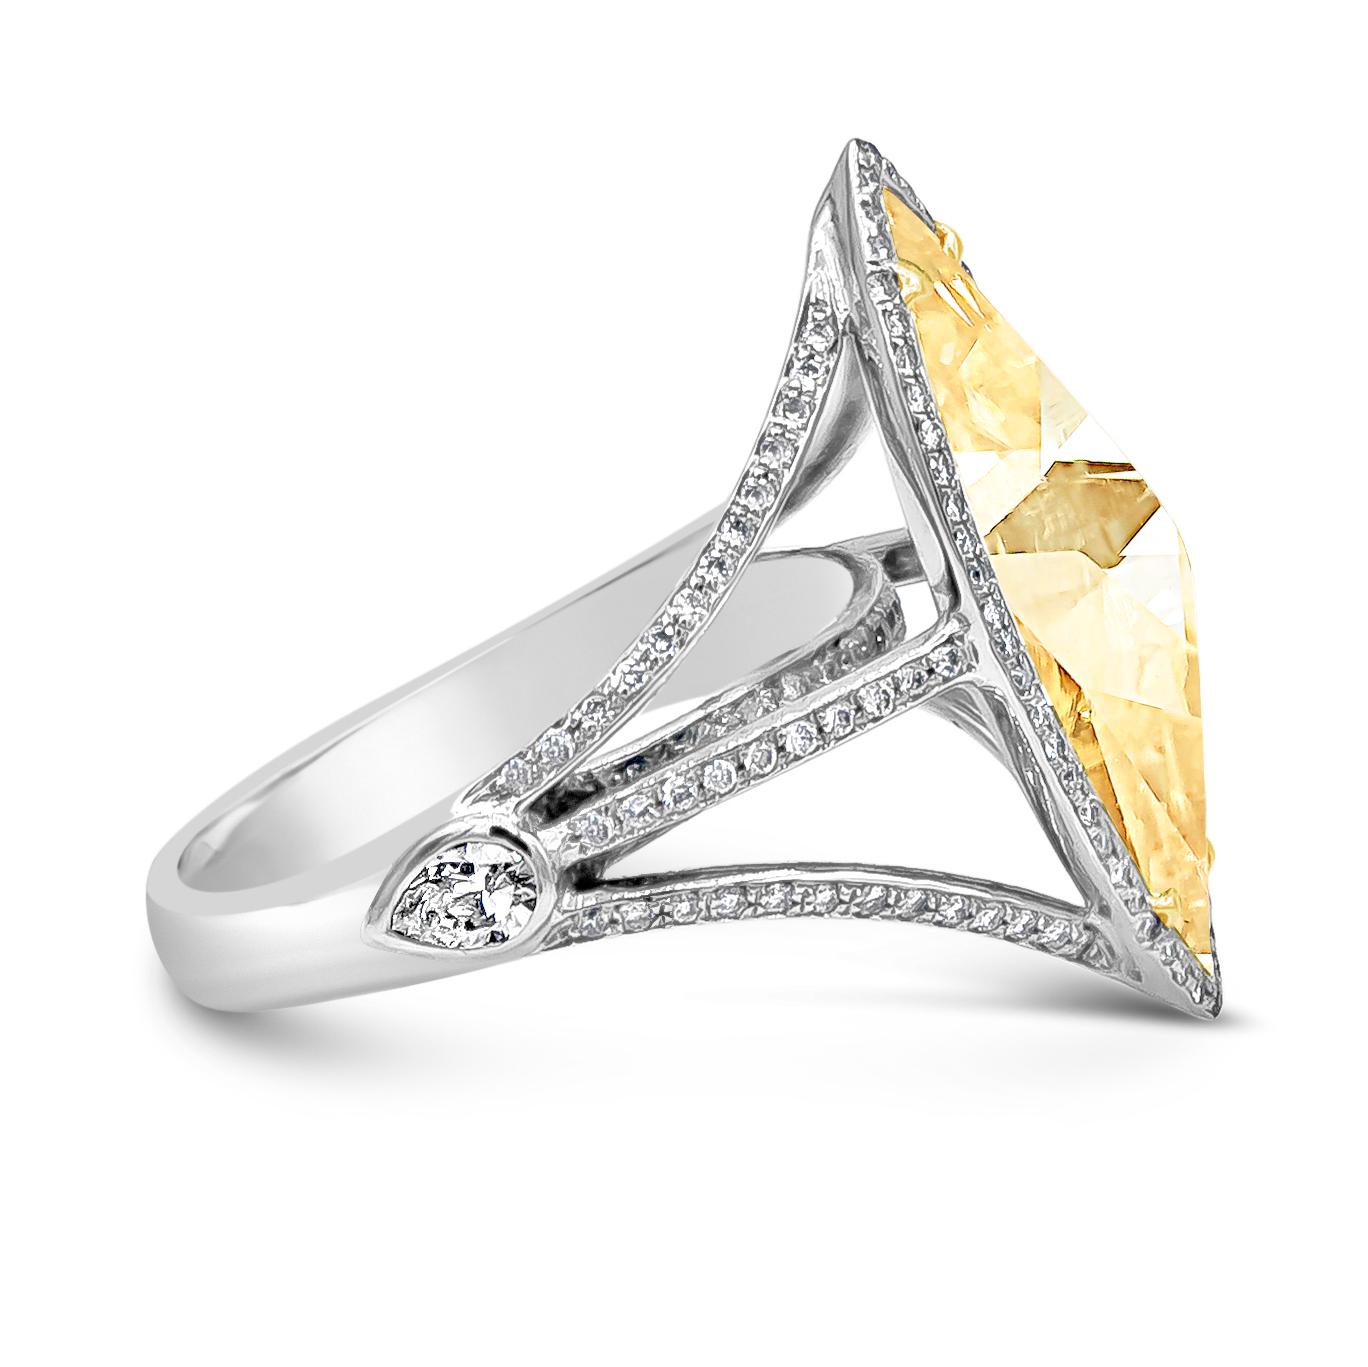 Mit einem 3,58 Karat großen, gelblichen Diamanten im Rosenschliff, EGL-zertifiziert in der Farbe L und in der Reinheit VVS2, gefasst in einer vierzinkigen Fassung aus 18 Karat Gelbgold. Akzentuiert durch eine einzelne Reihe halbrunder Brillanten.